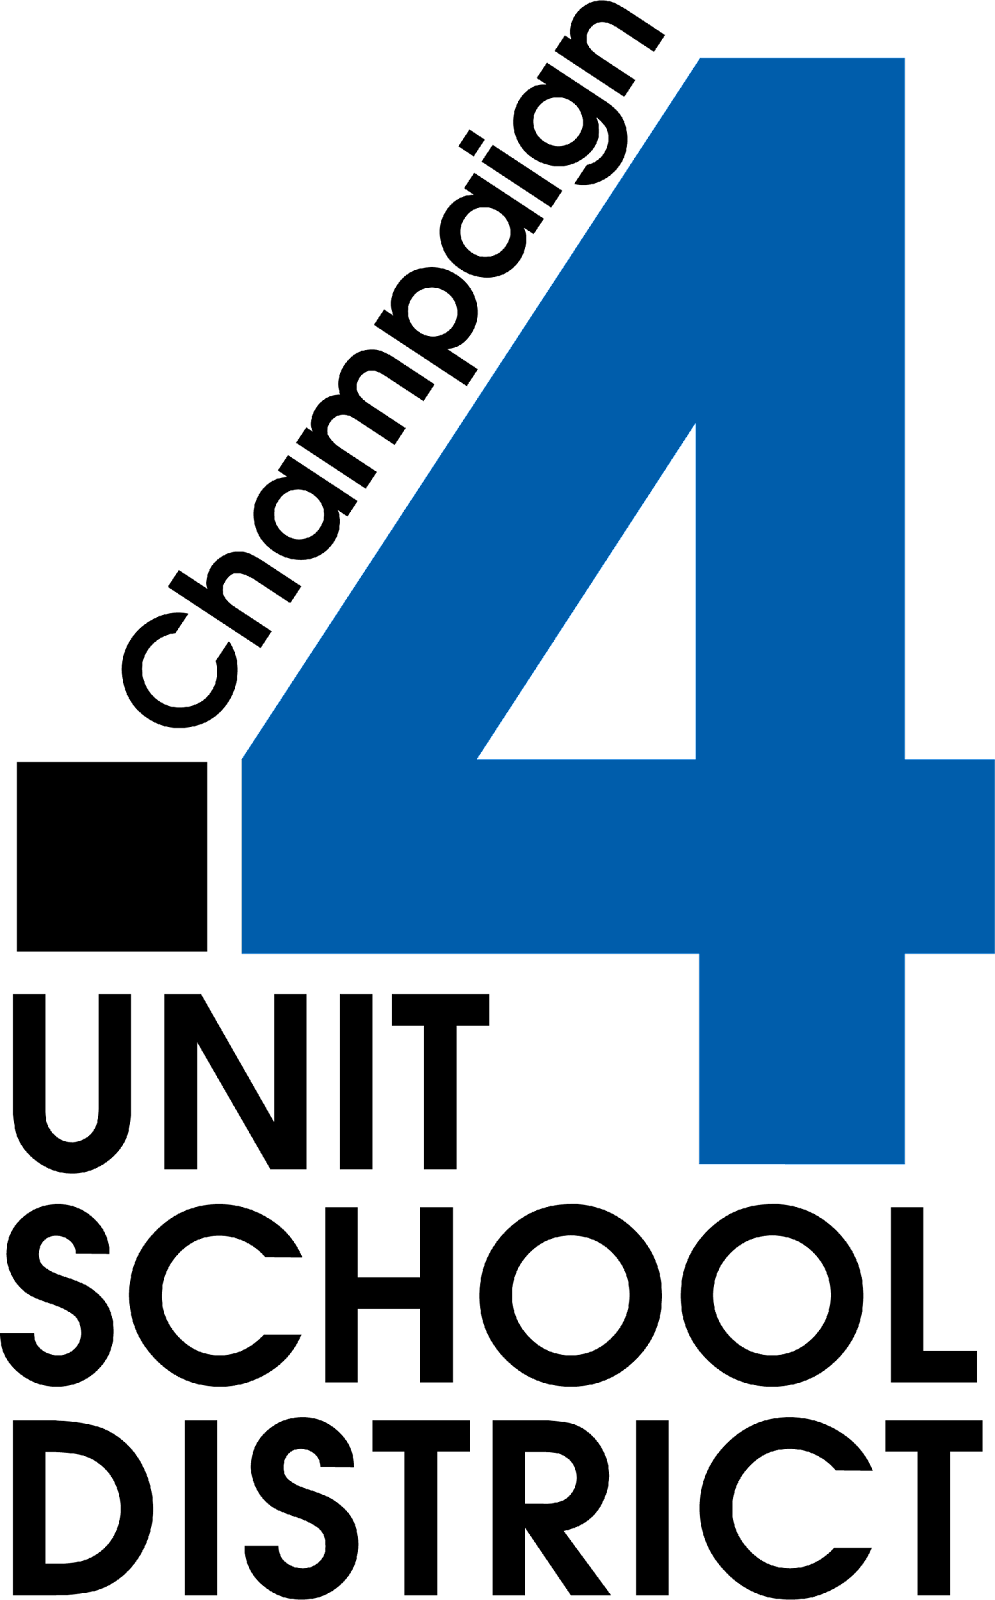 Champaign Unit 4 logo and button